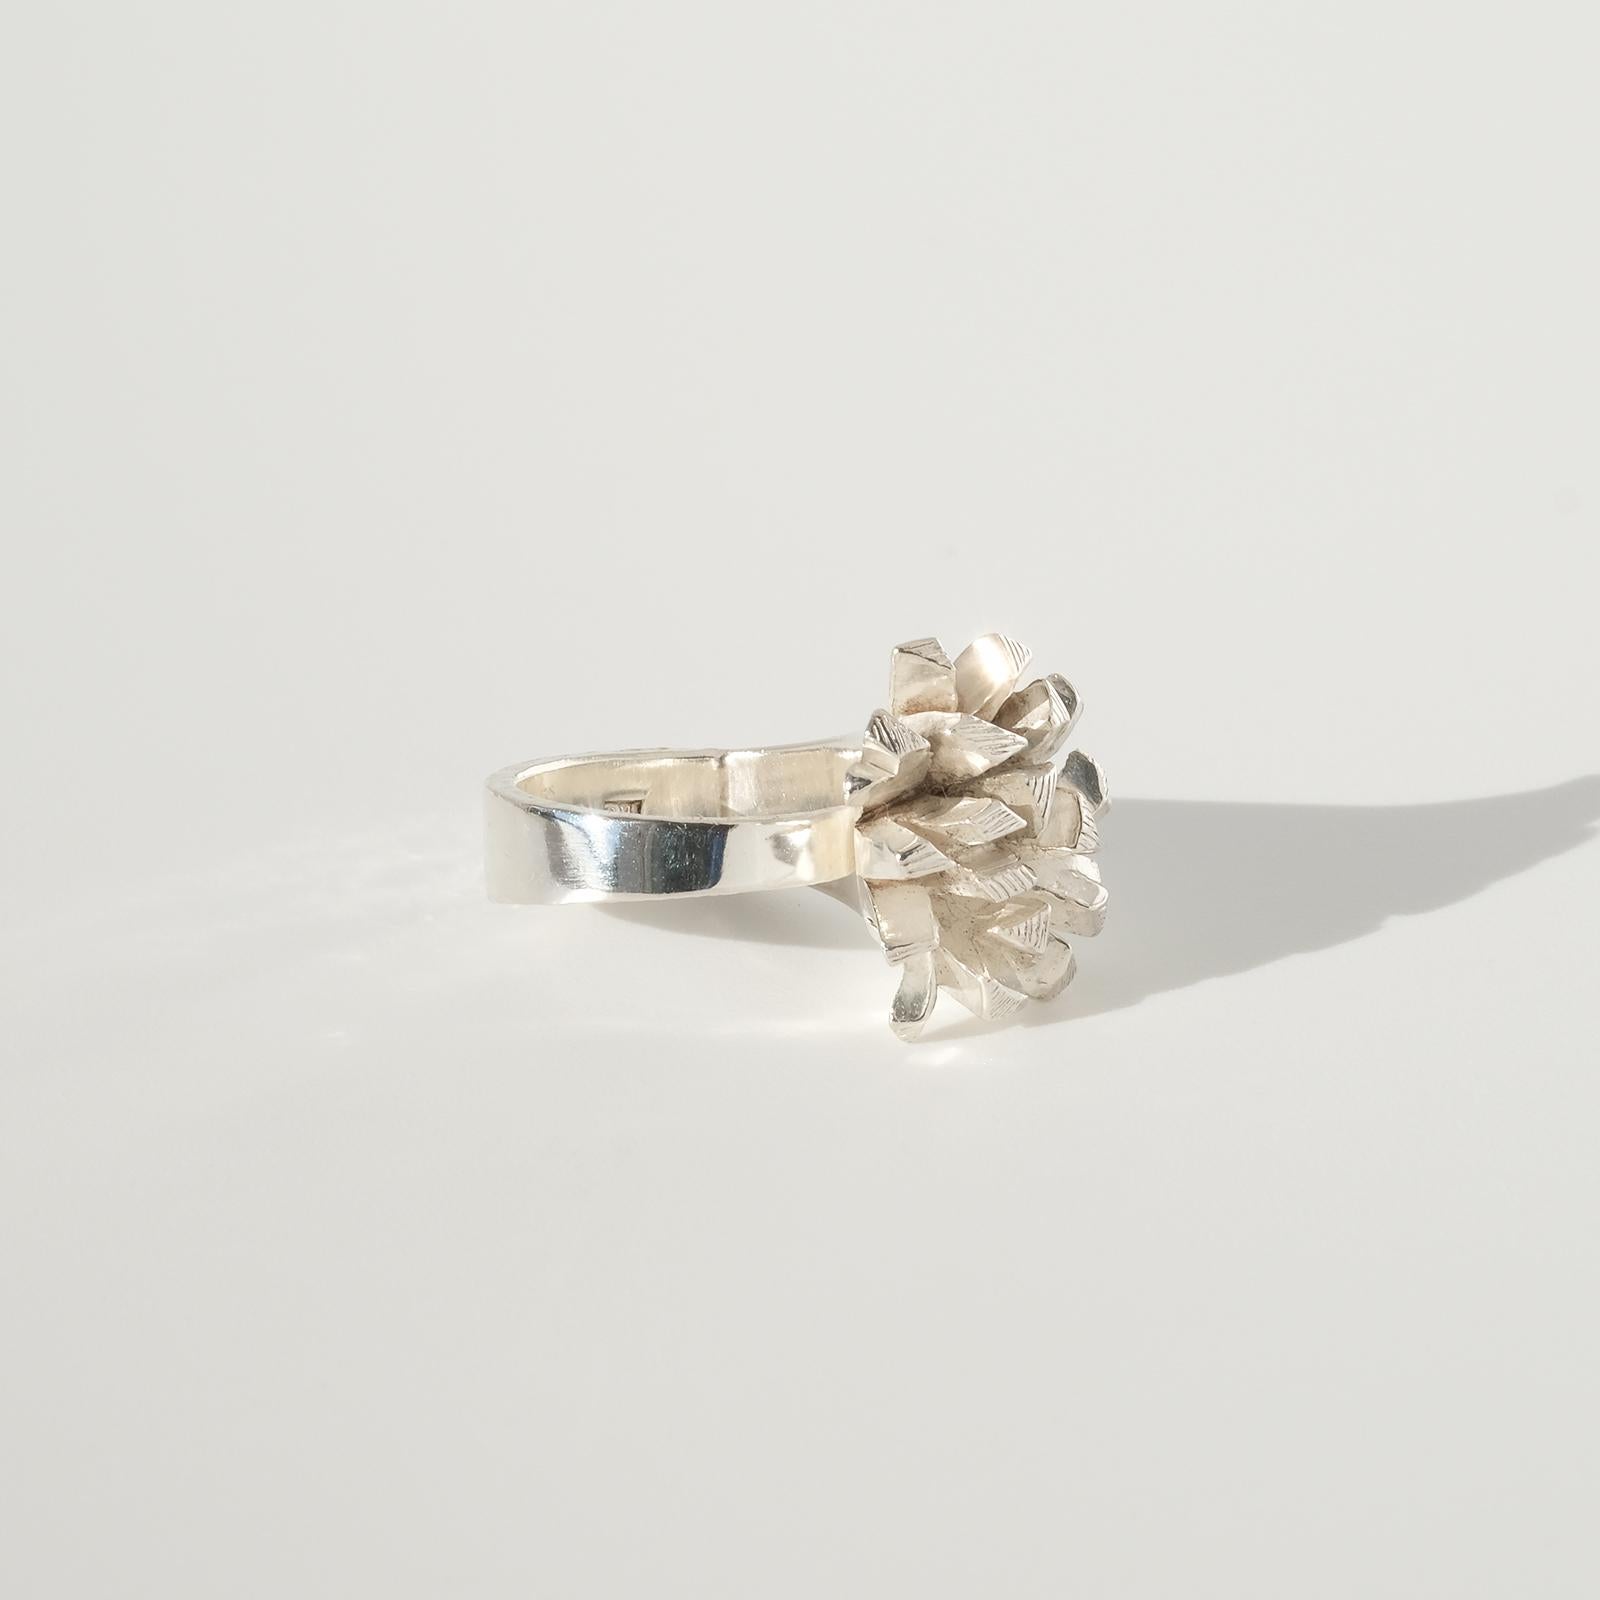 Dieser Ring aus Sterlingsilber hat eine ungewöhnliche und verspielte Form, die sowohl rund als auch diagonal gebogen ist.

Der verspielte und silbern glänzende Ring verleiht jedem Outfit den letzten Schliff, aber am besten passt er wohl zu einem